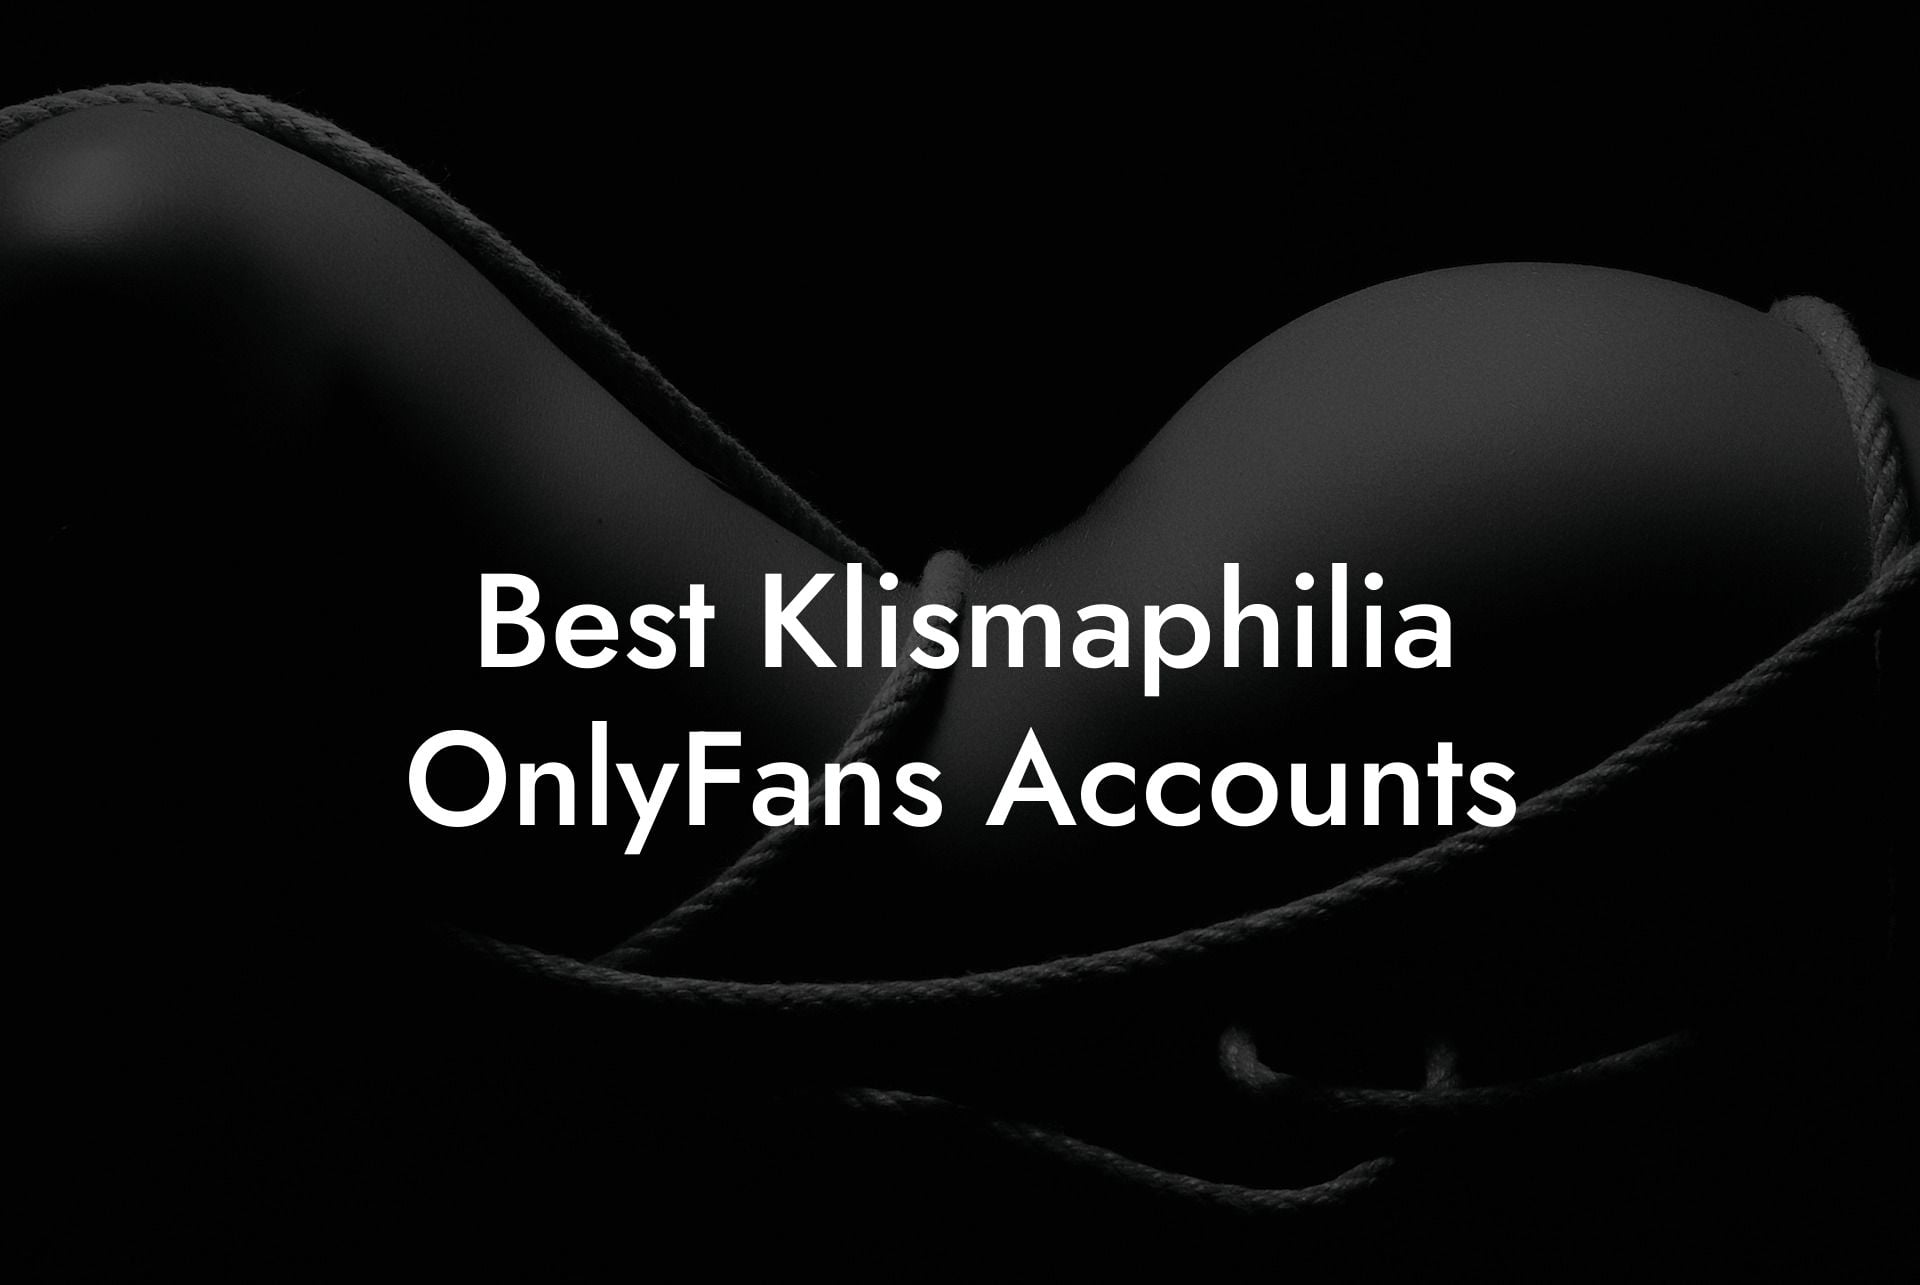 Best Klismaphilia OnlyFans Accounts